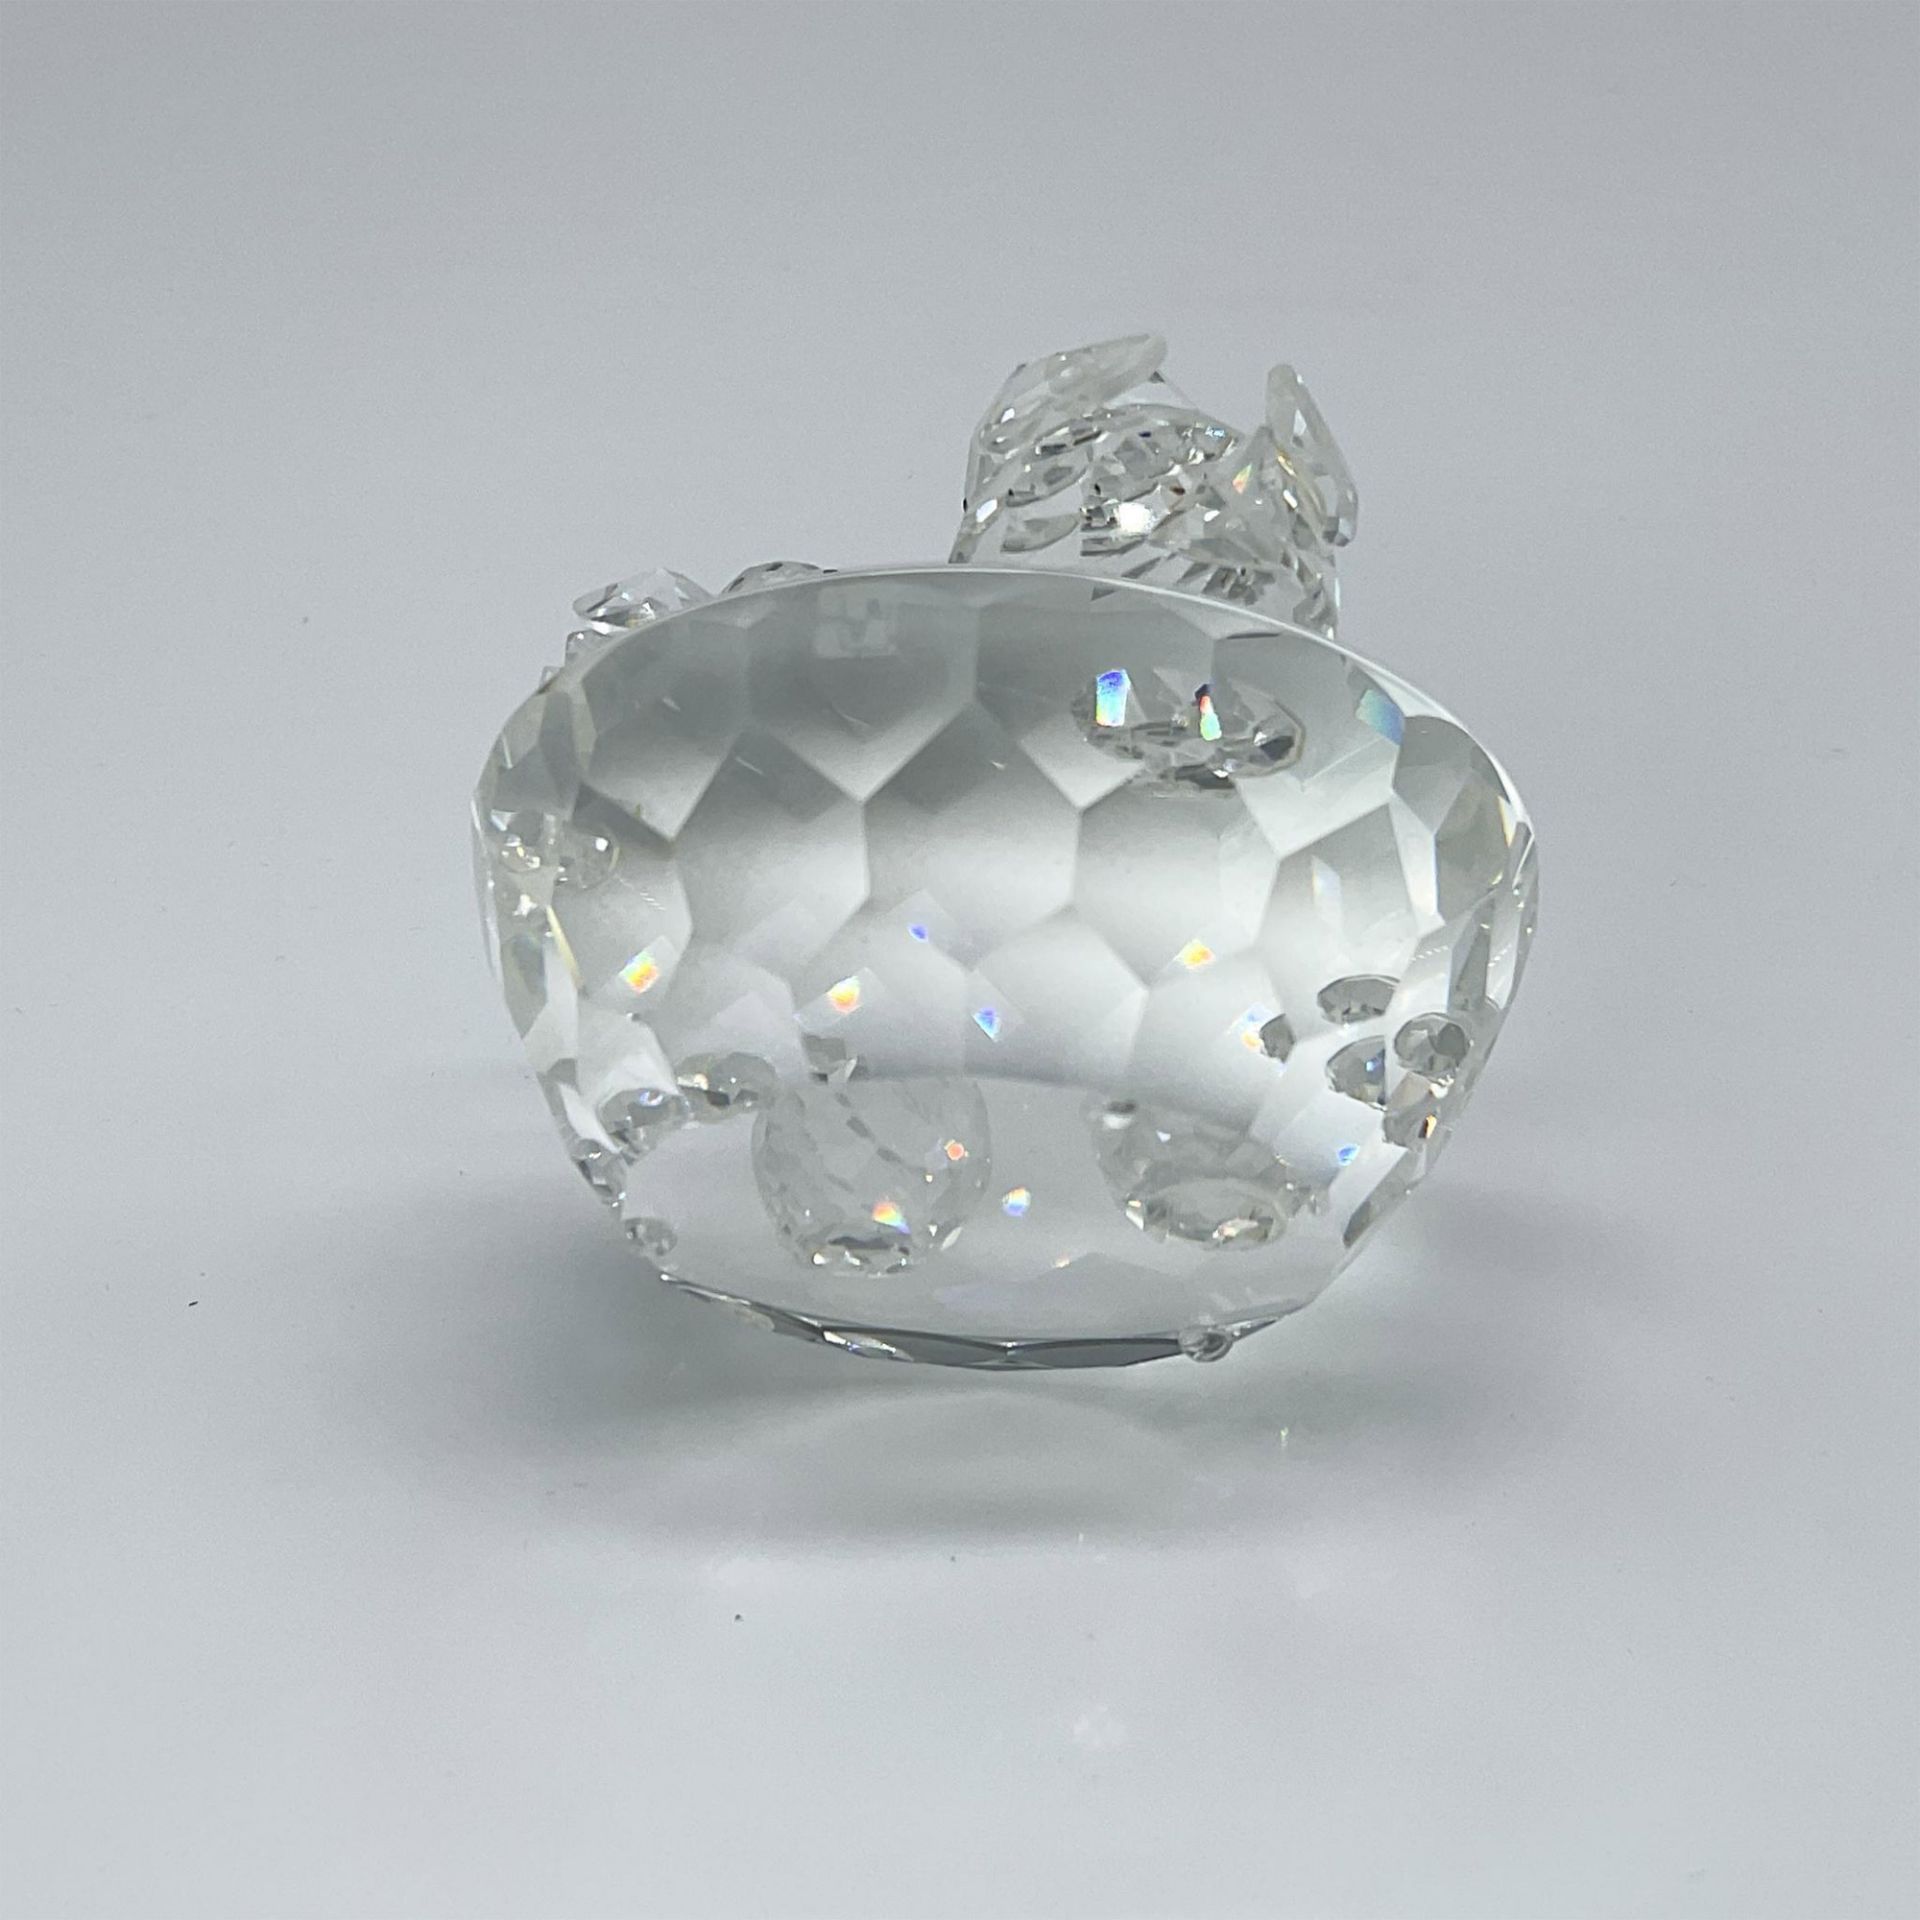 Swarovski Crystal Figurine, Bird's Nest - Image 3 of 3